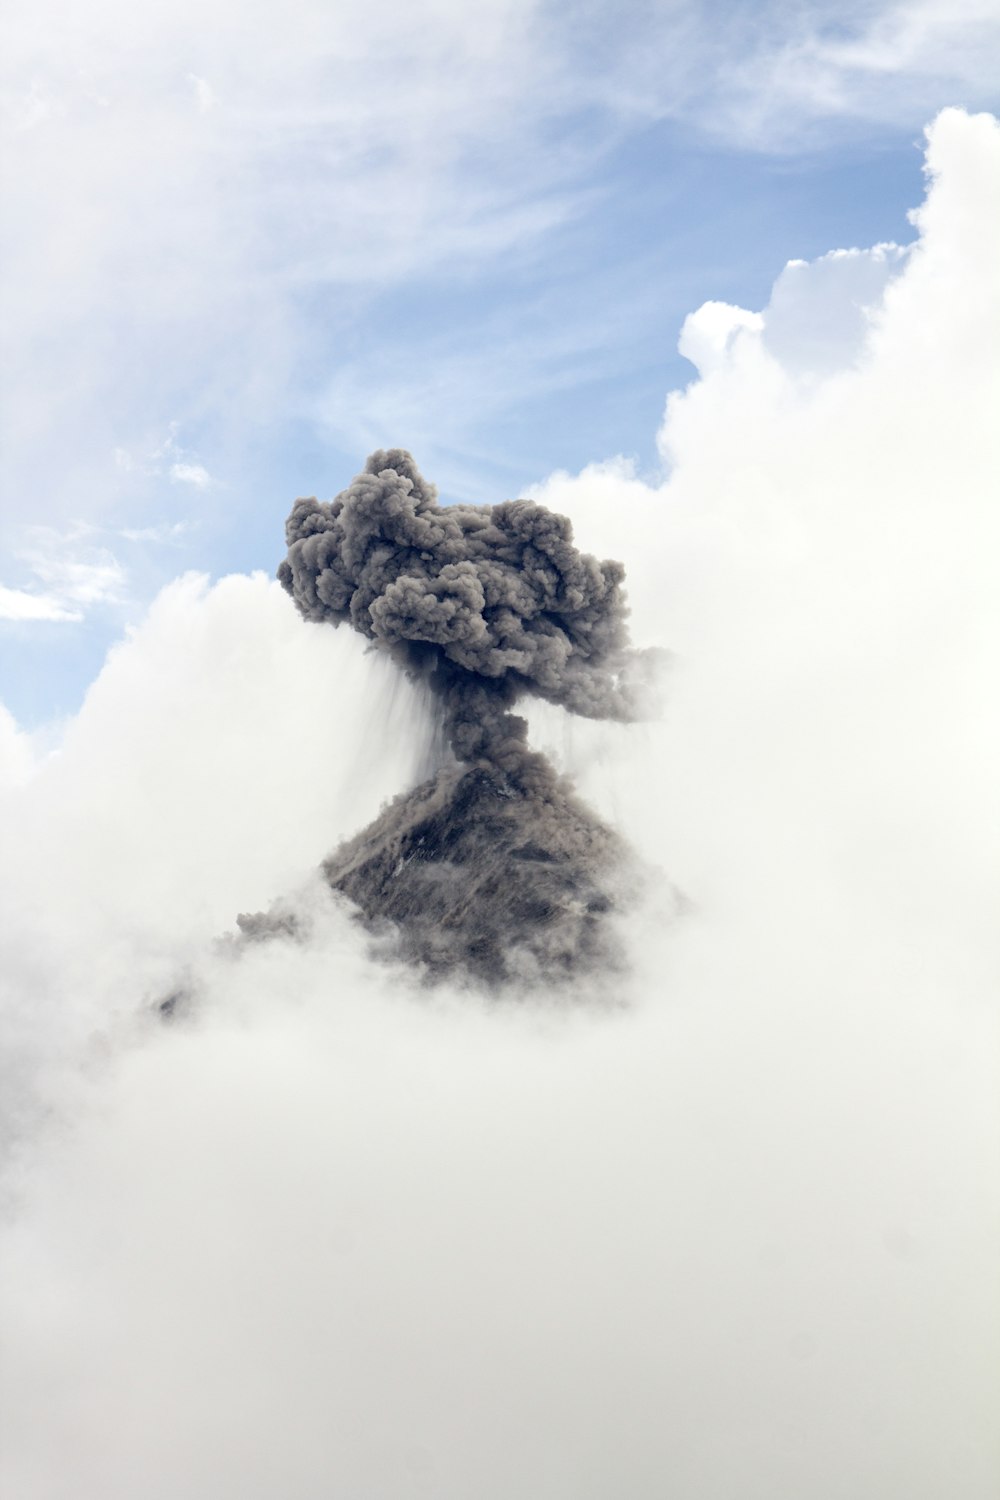 Zeitrafferfotografie eines Vulkanausbruchs